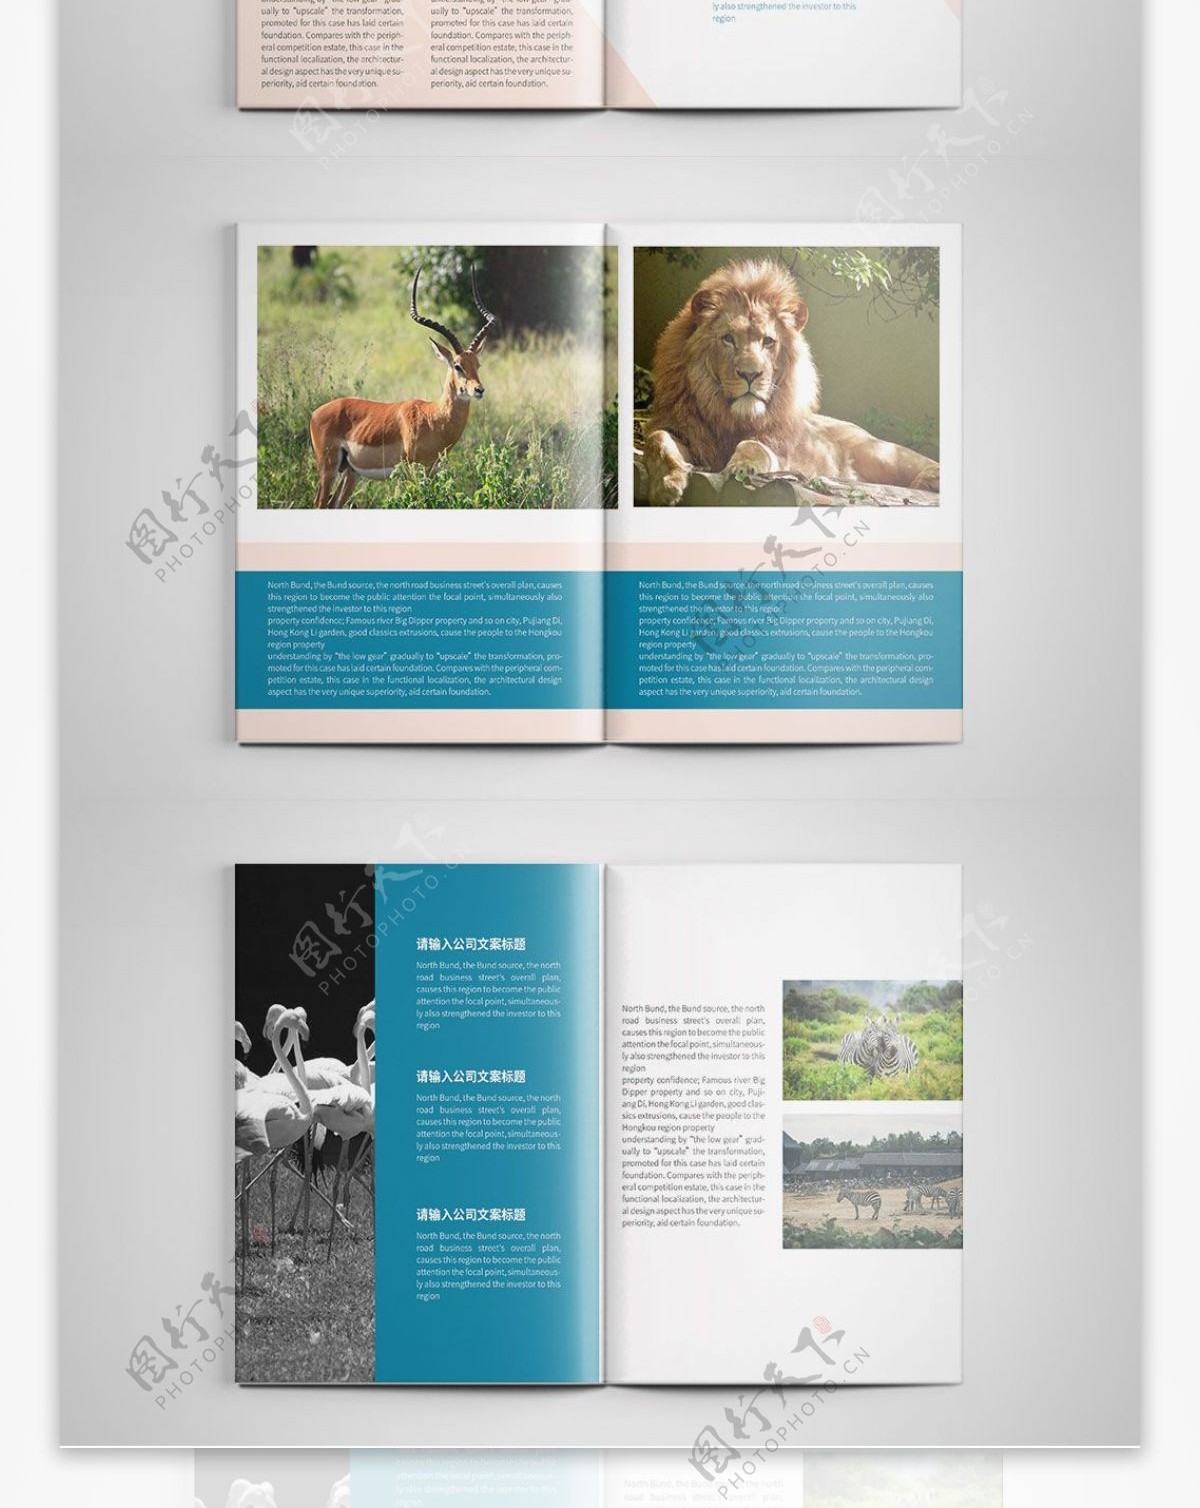 创意动物园宣传画册设计PSD模板